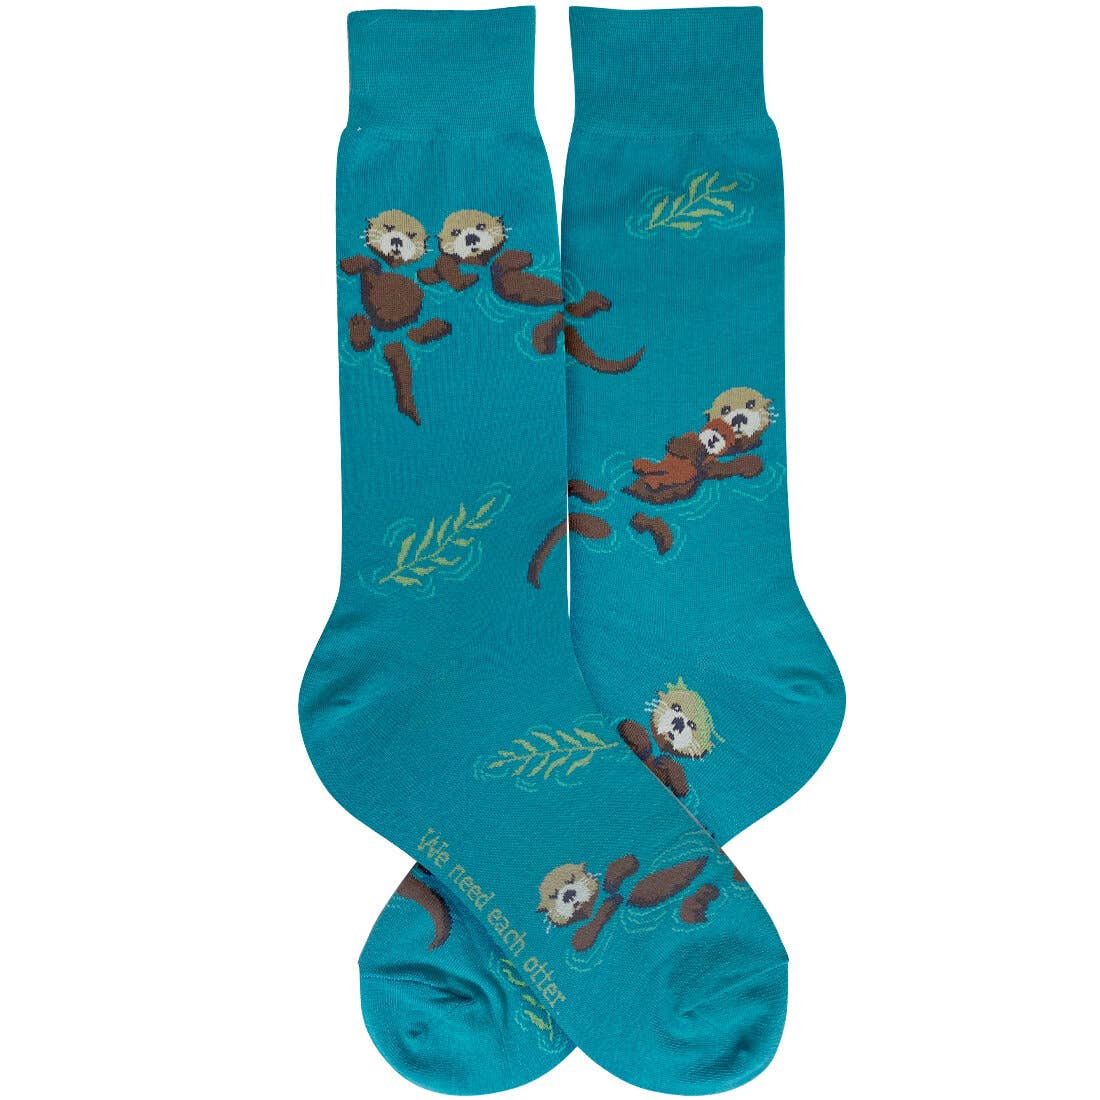 Foot Traffic Socks - Men's  and Women's Otters Socks